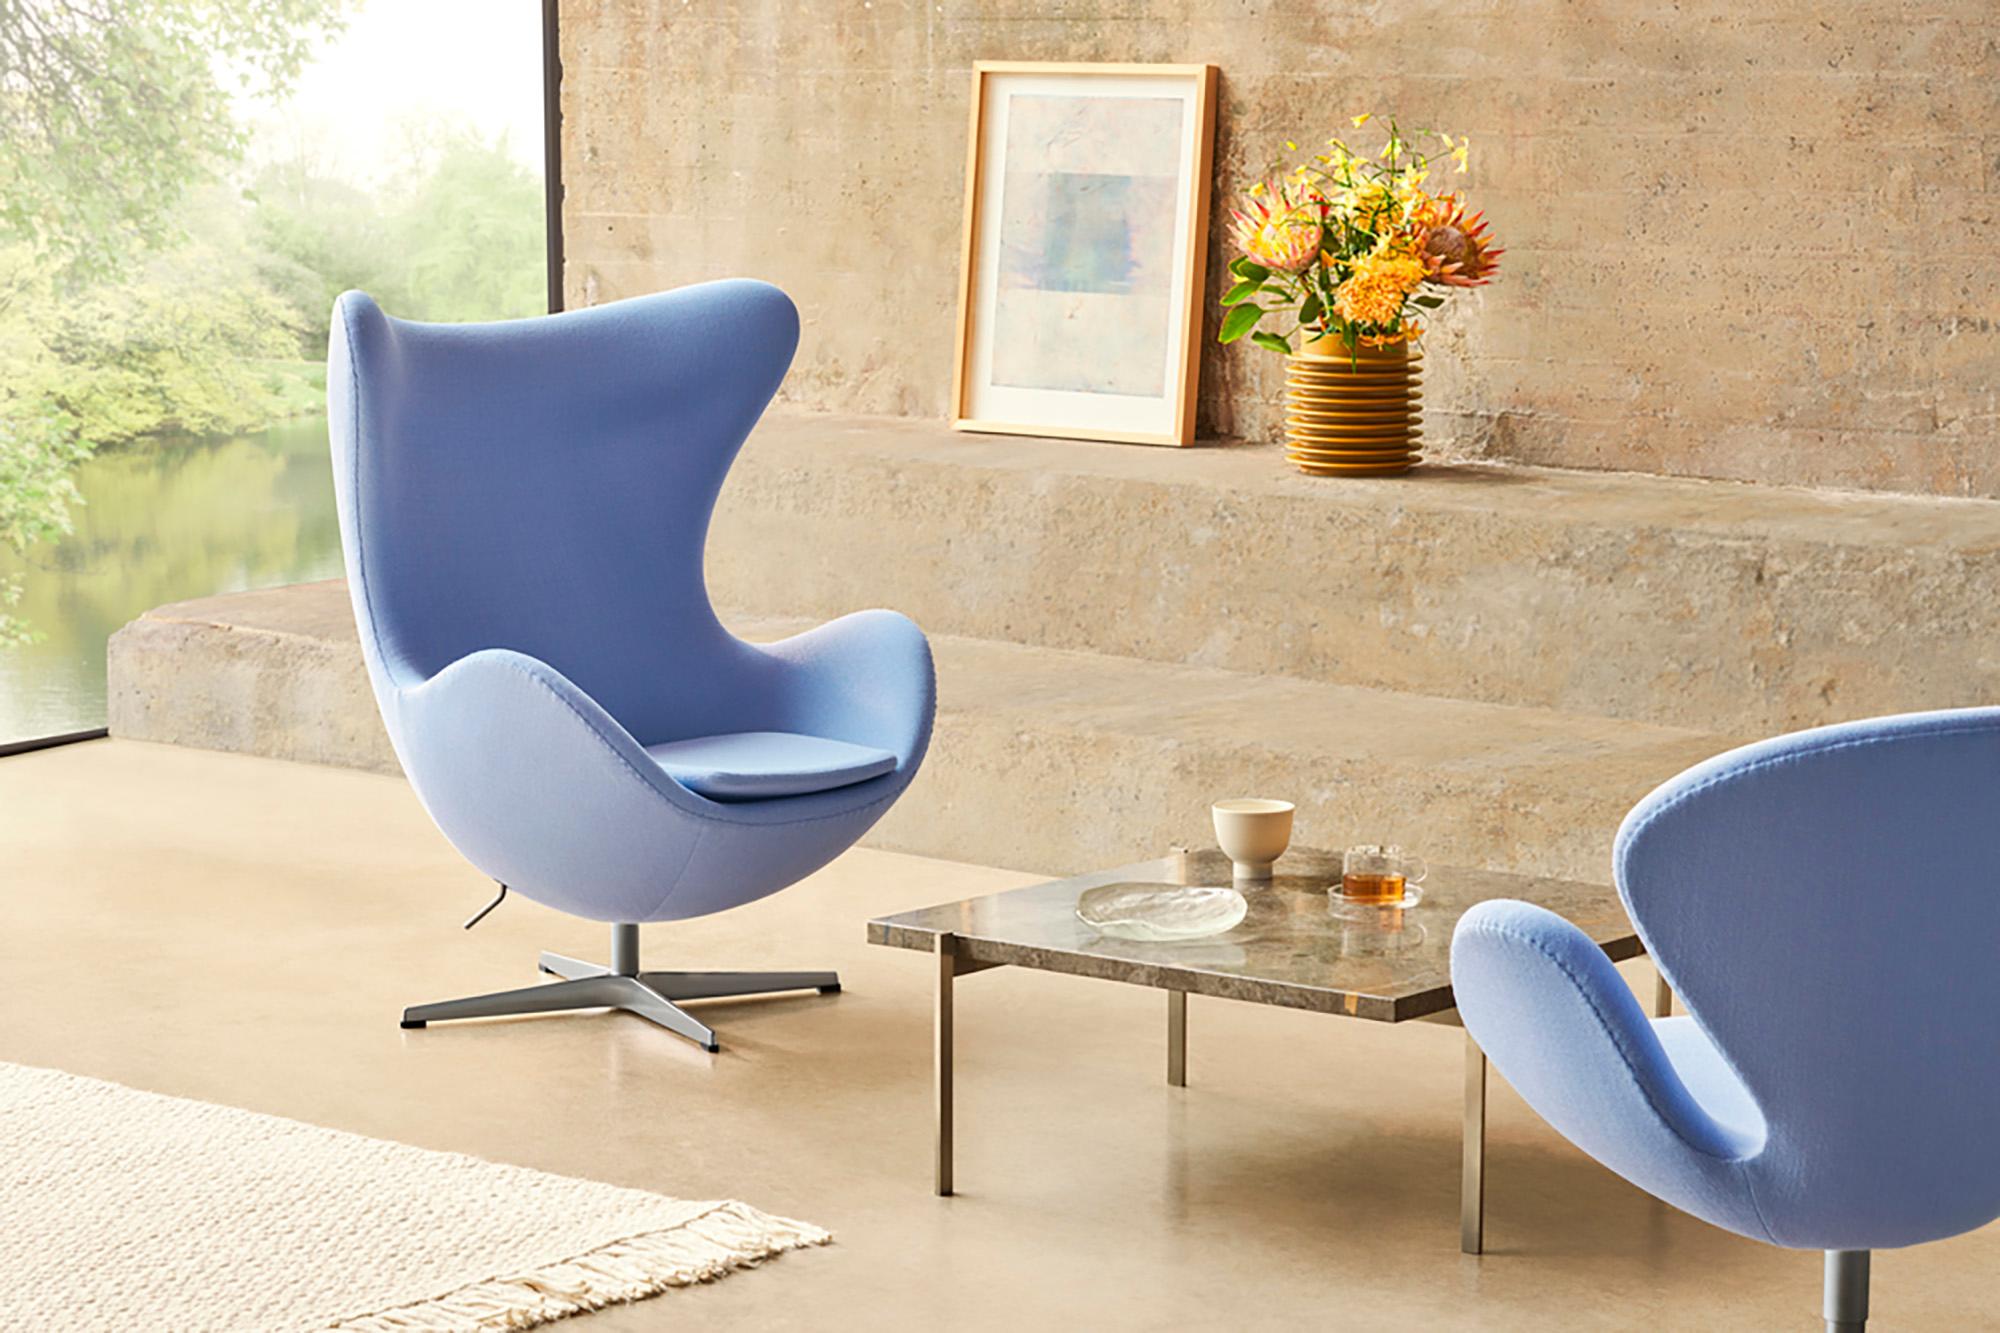 Arne Jacobsen 'Swan' Chair for Fritz Hansen in Fabric Upholstery (Cat. 1) For Sale 3